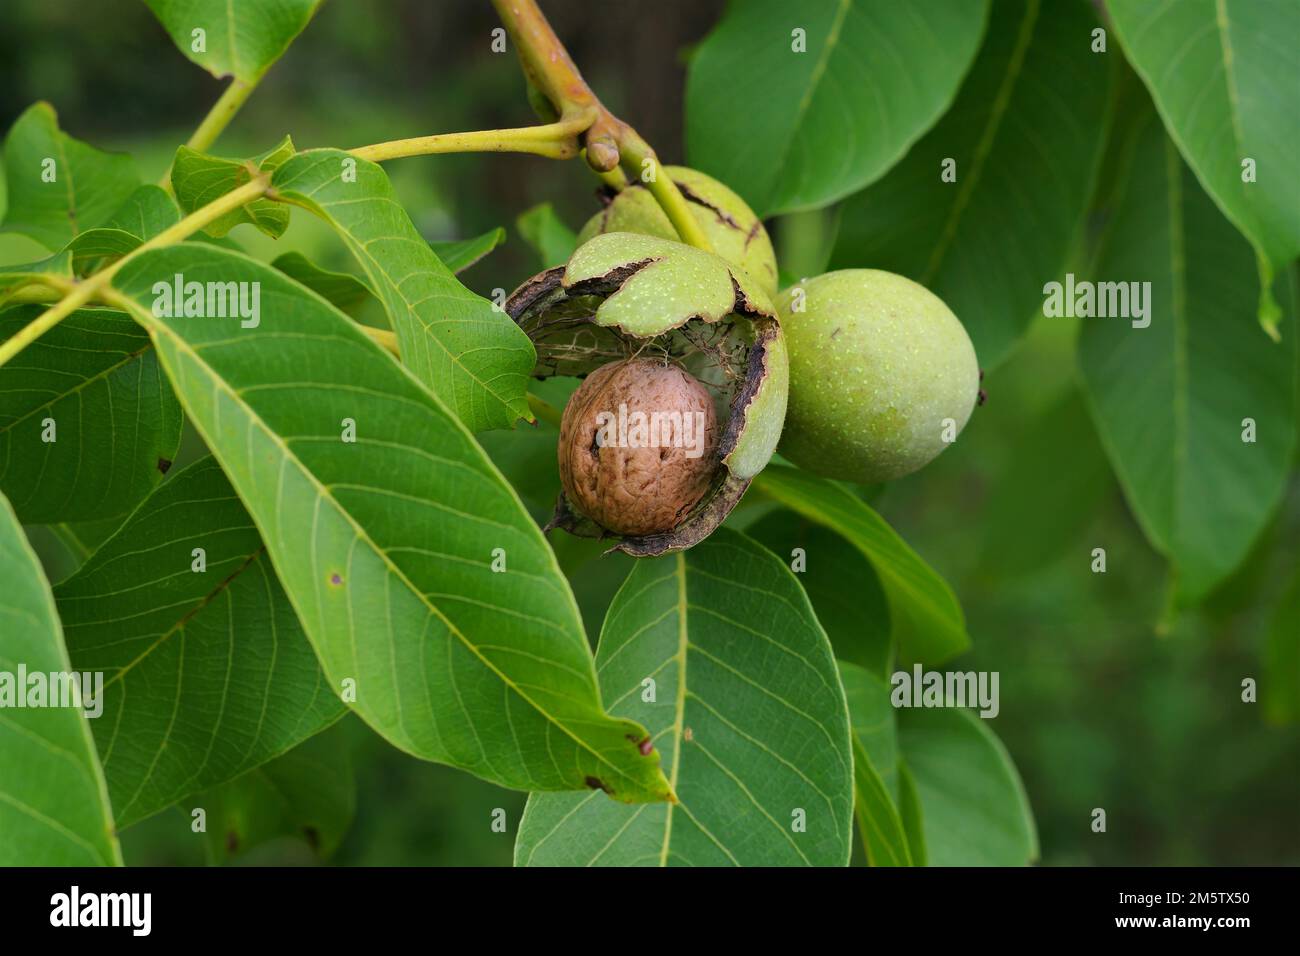 a walnut tree with many ripe nuts Stock Photo